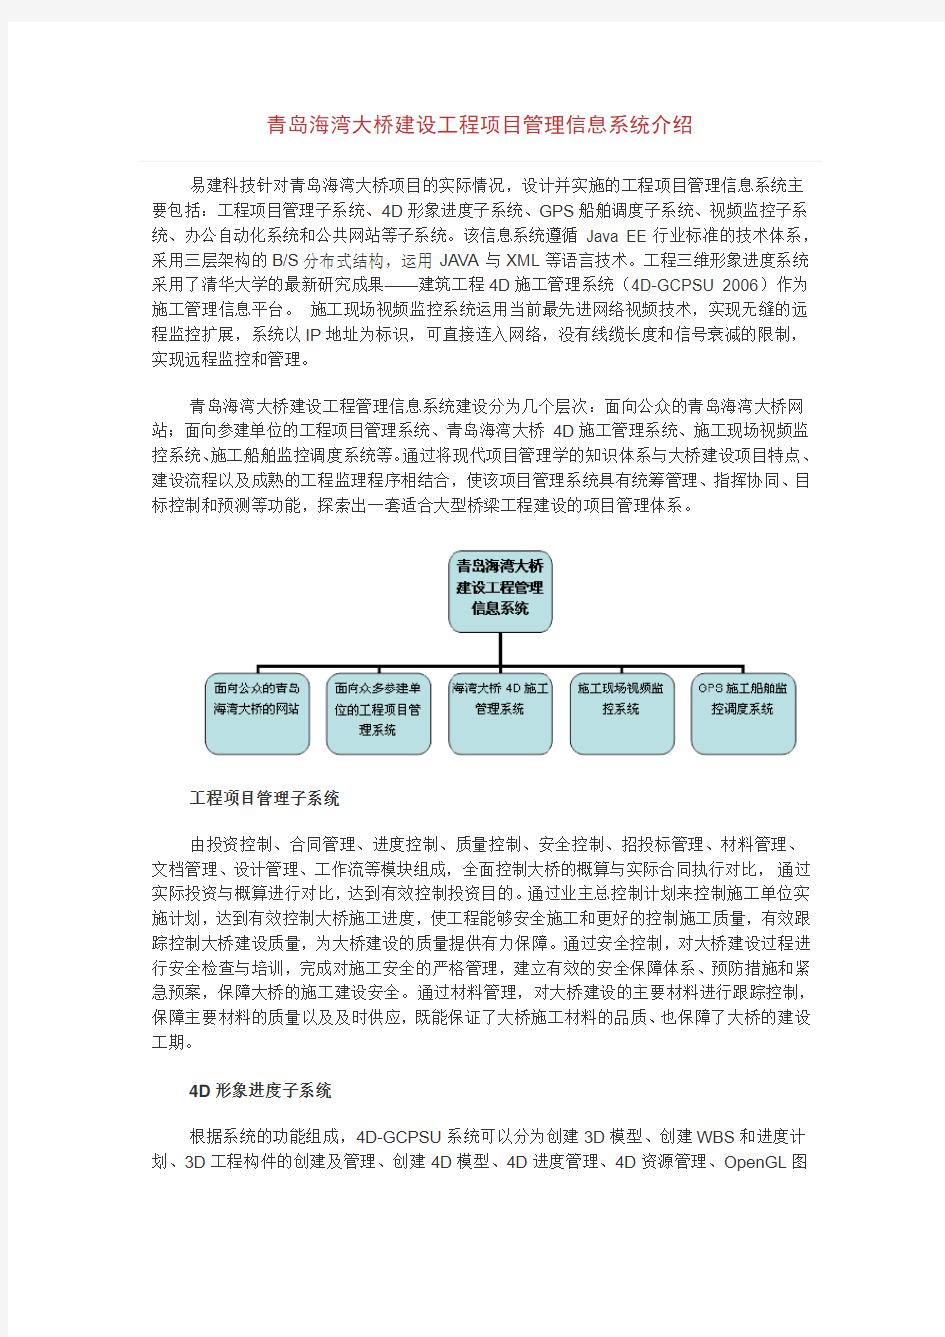 青岛海湾大桥建设工程项目管理信息系统介绍